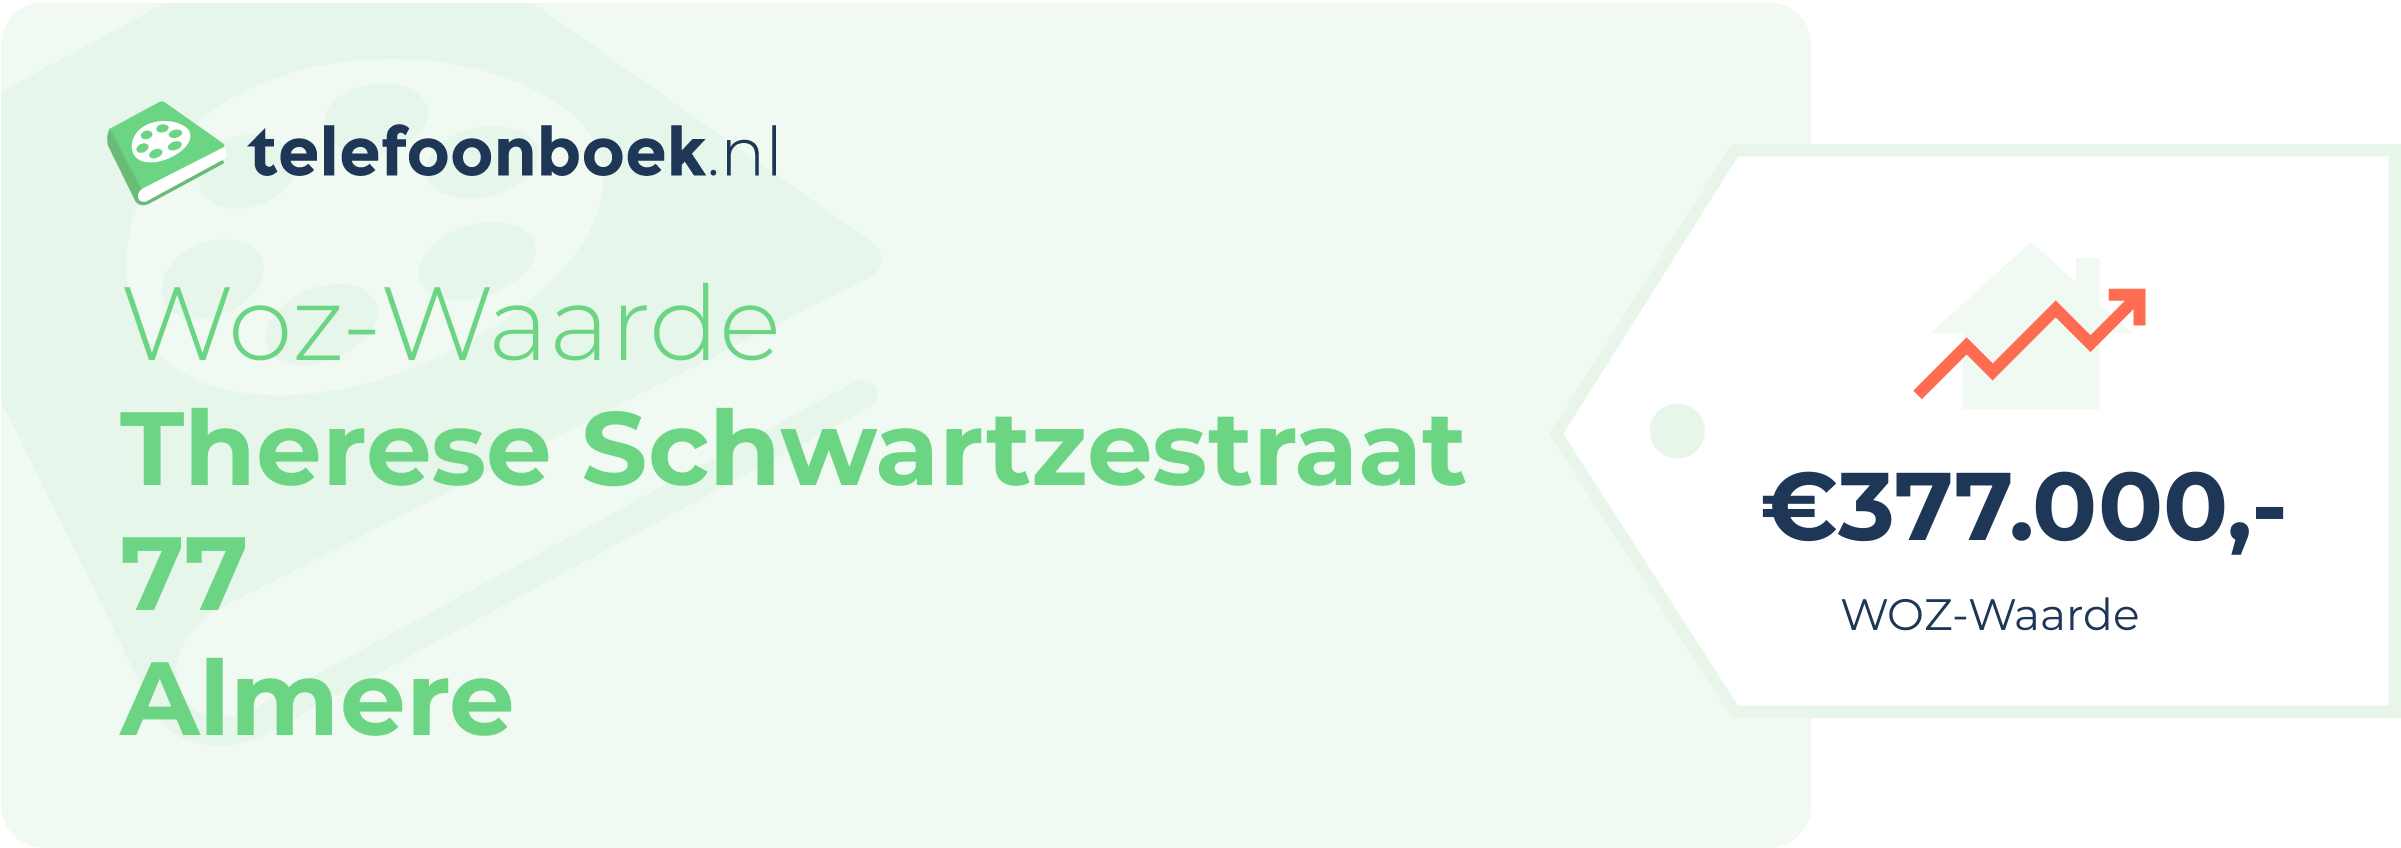 WOZ-waarde Therese Schwartzestraat 77 Almere